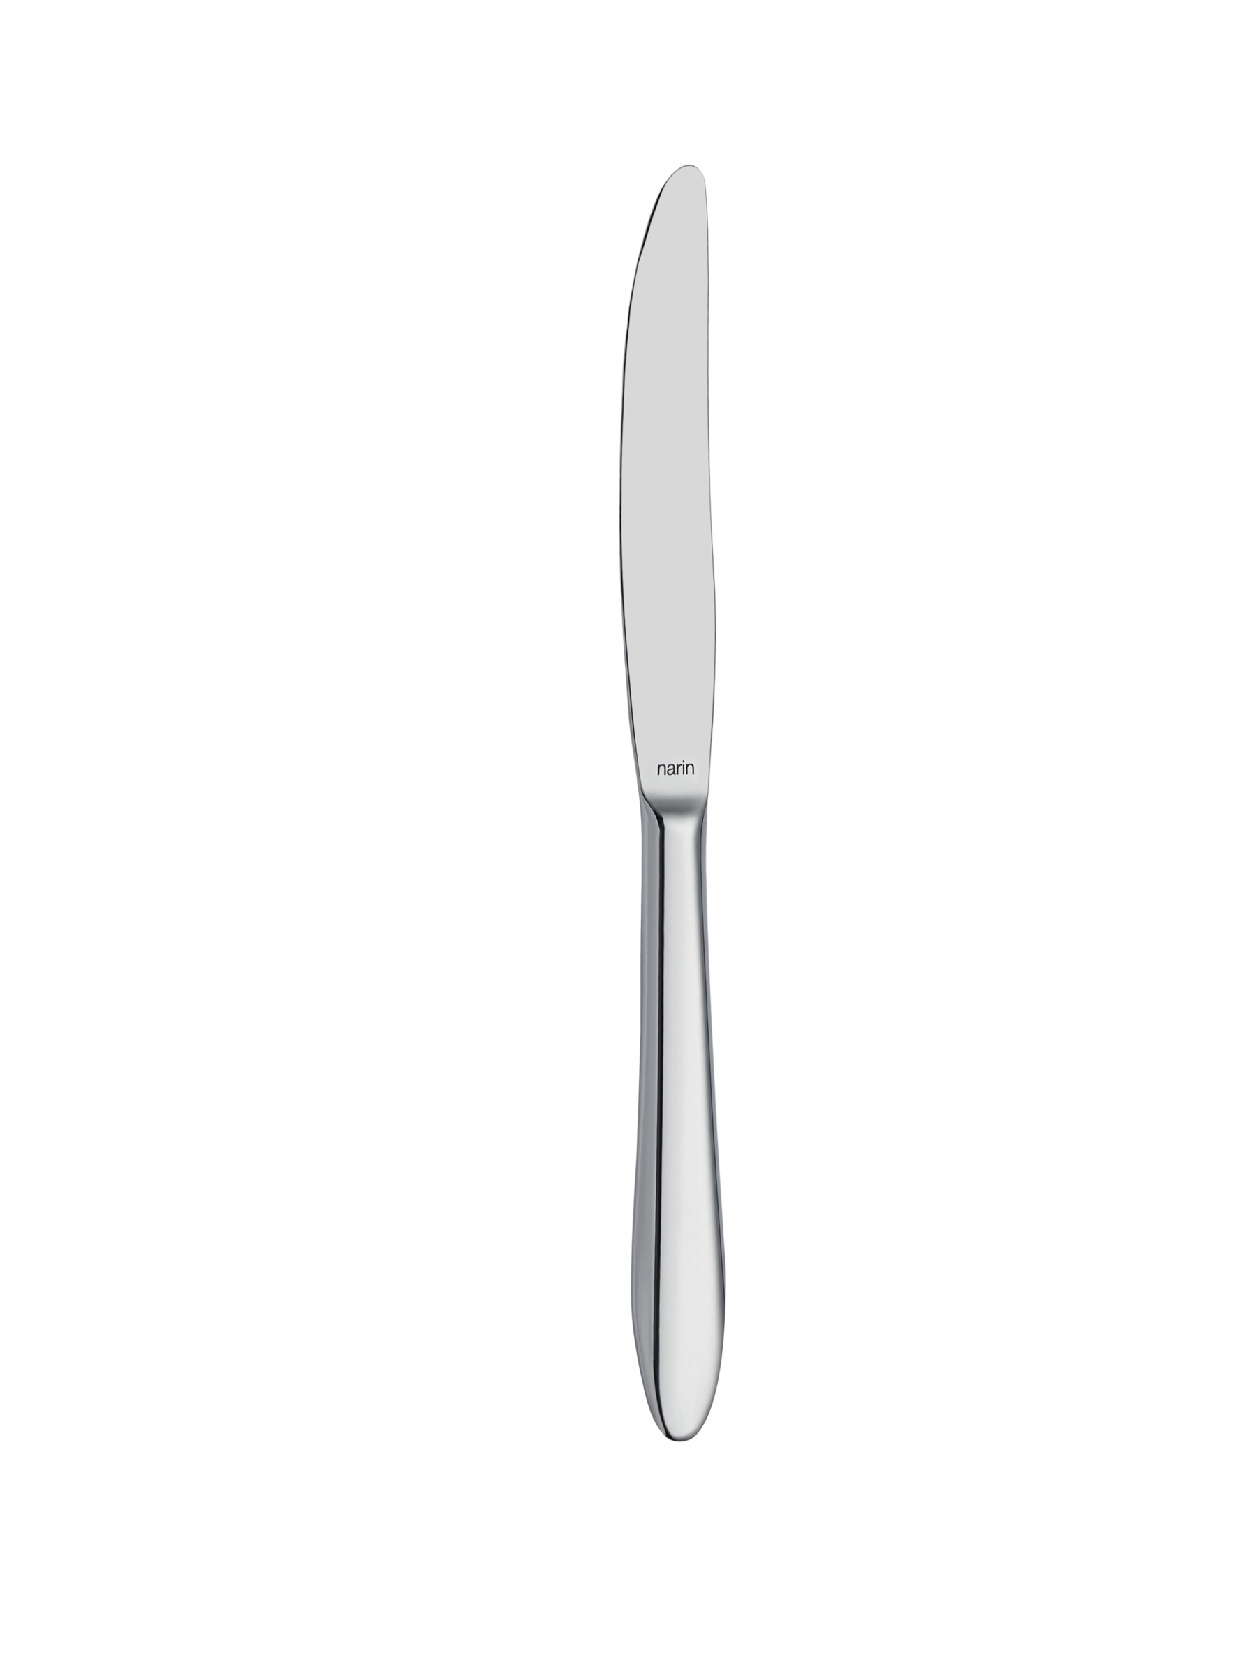 Star - Plain - Dinner Knife